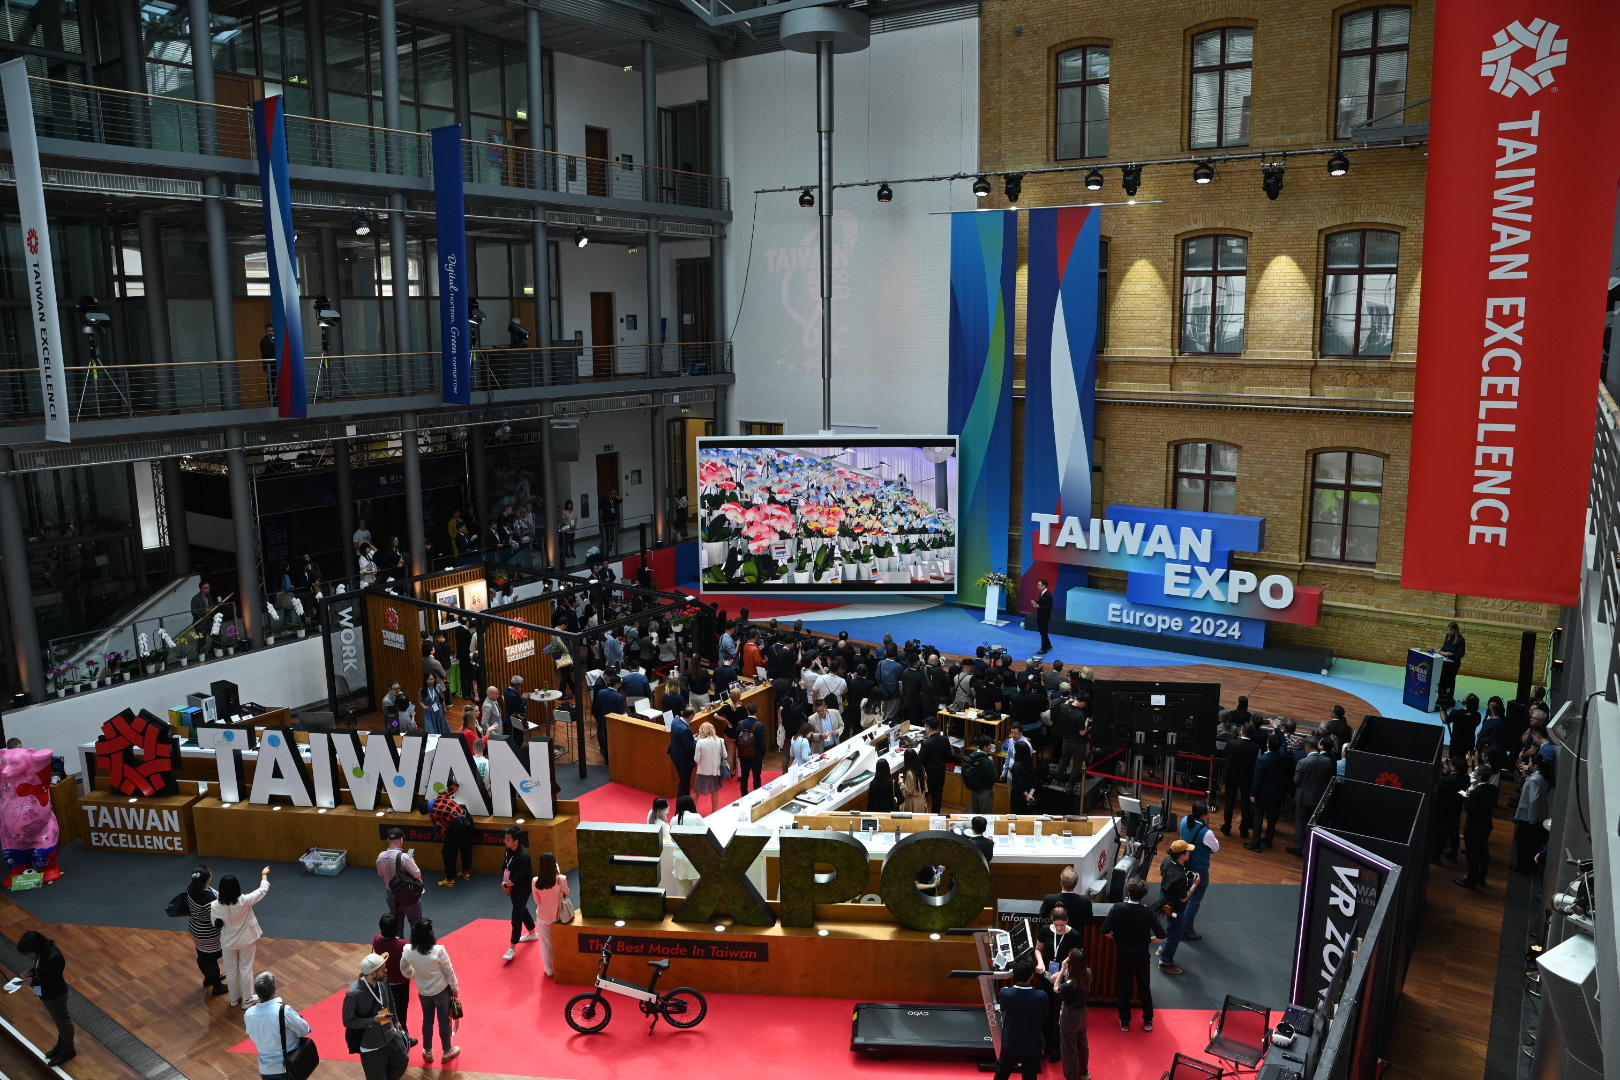 Taiwan Excellence feiert Europapremiere auf Expo in Berlin